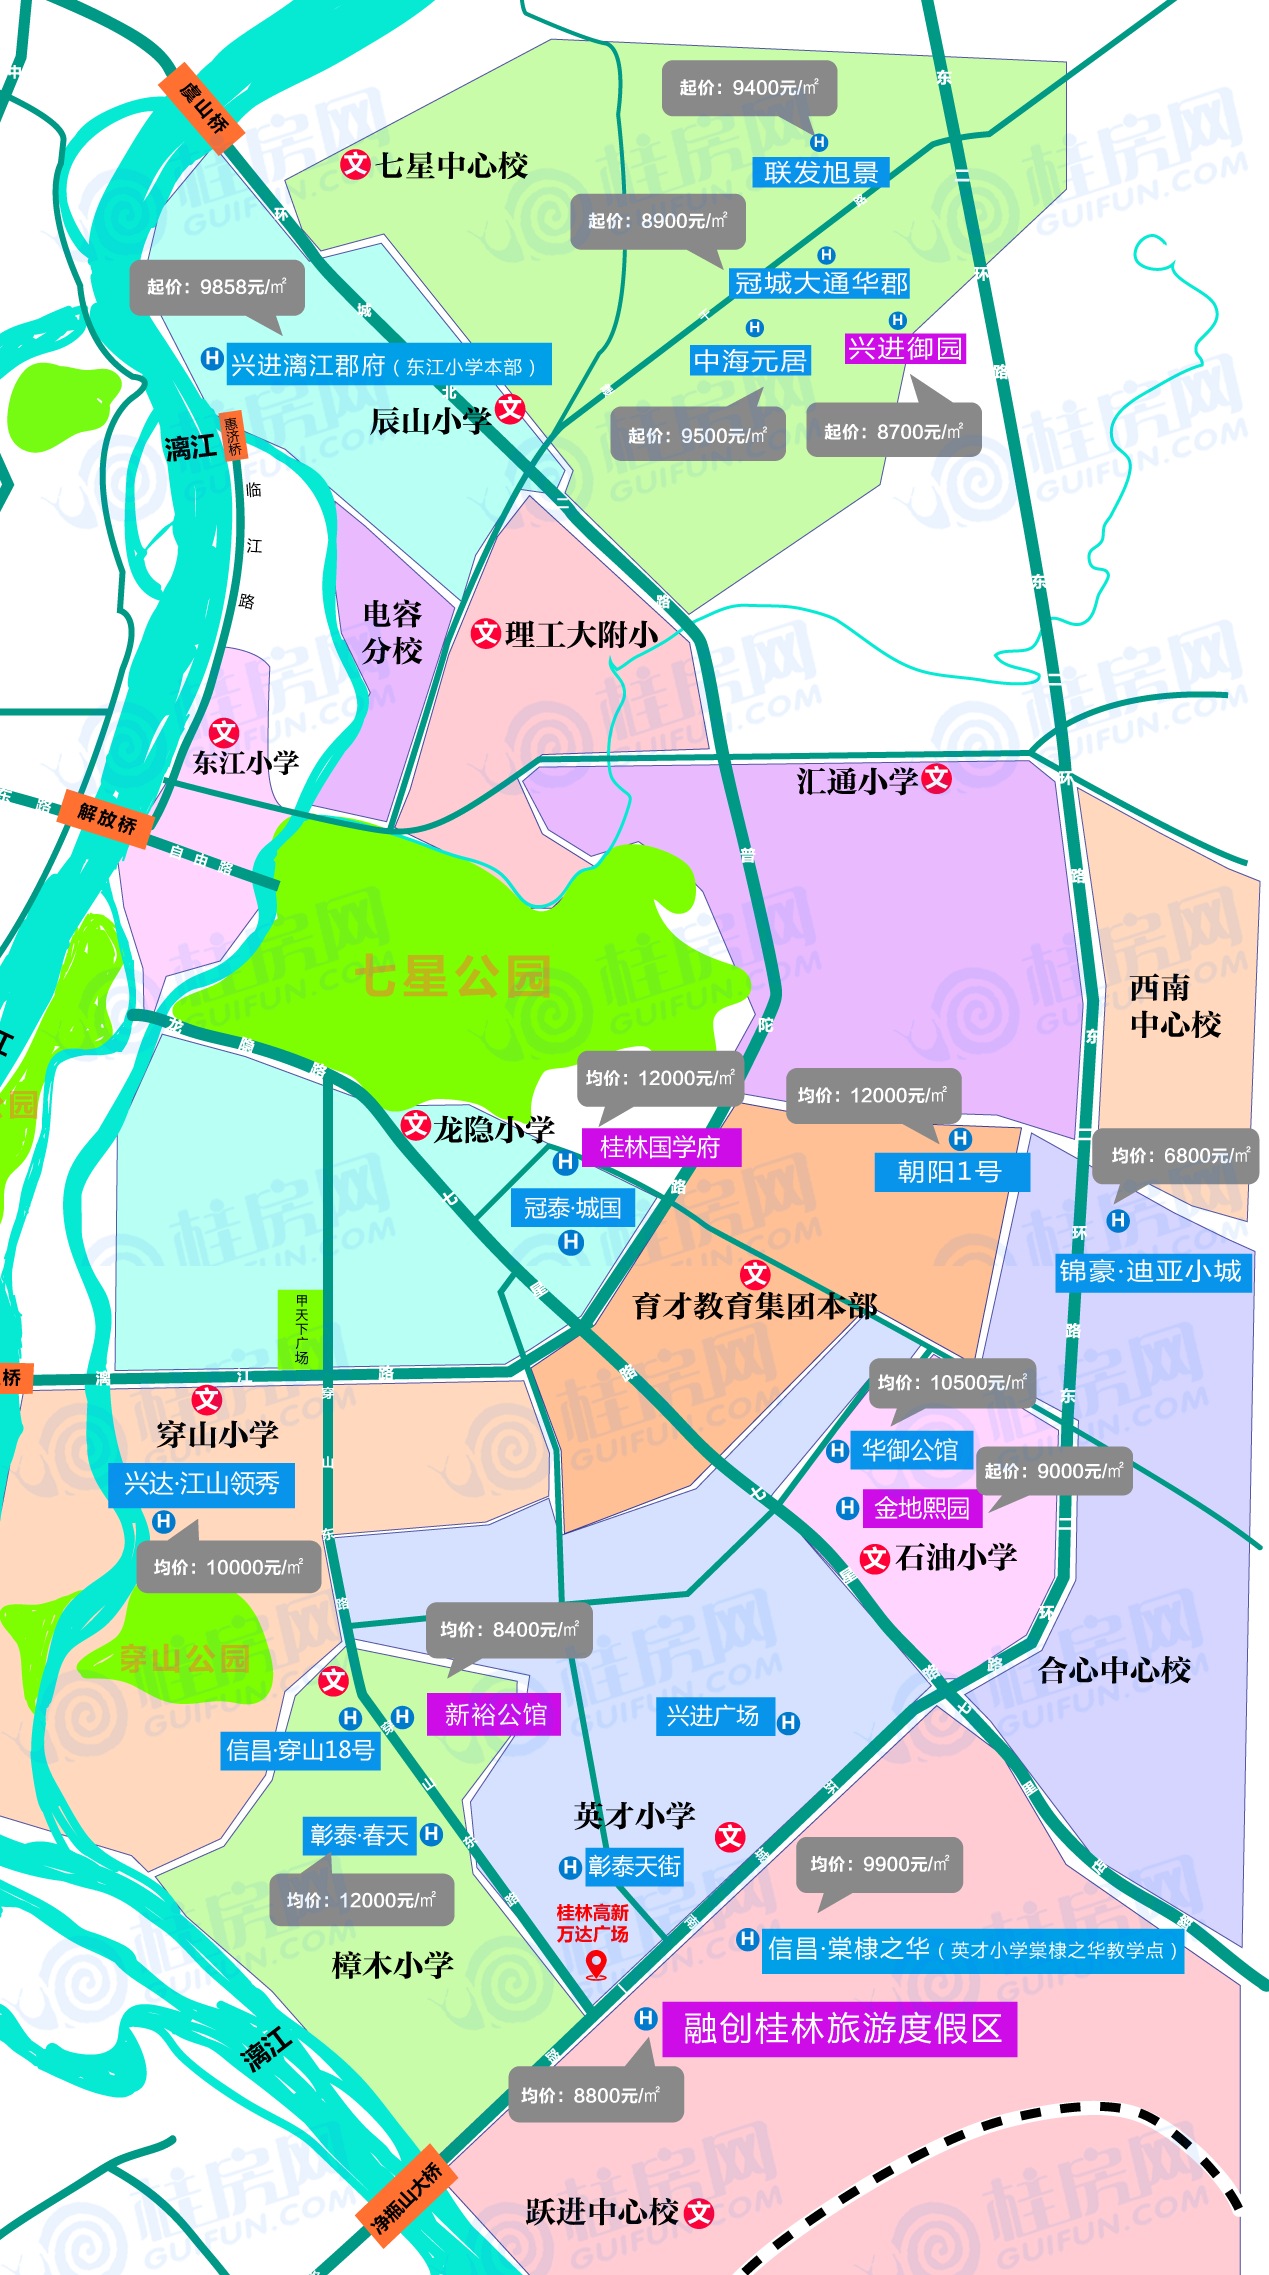 房价上涨又刷屏最新桂林房价楼市地图学区分布全部已集齐